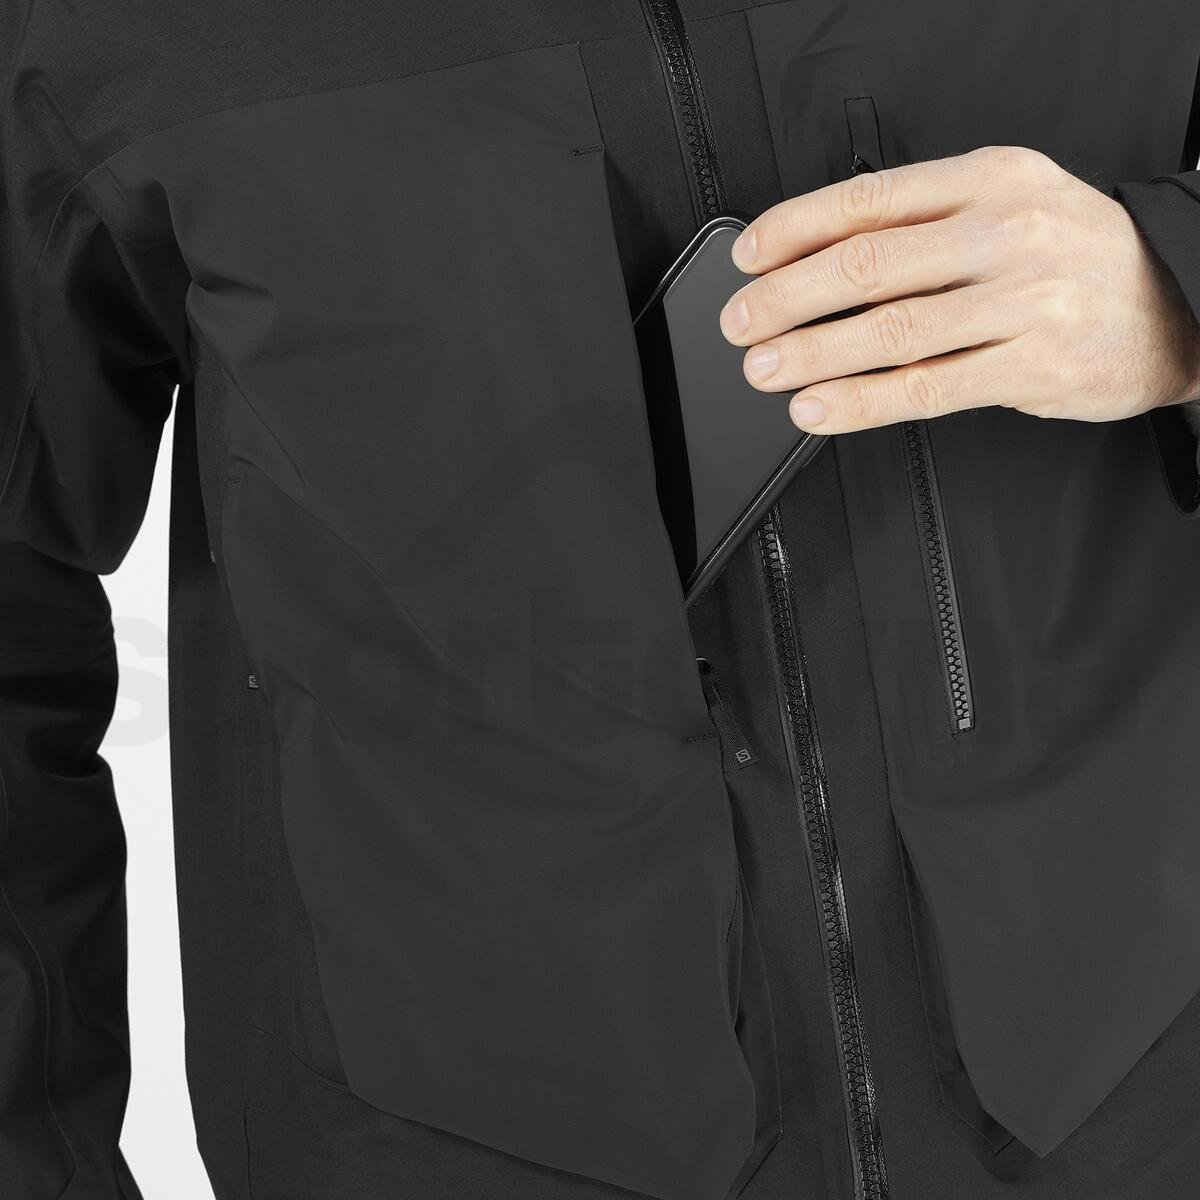 Bunda Salomon Stance 3L Long Jacket M - černá